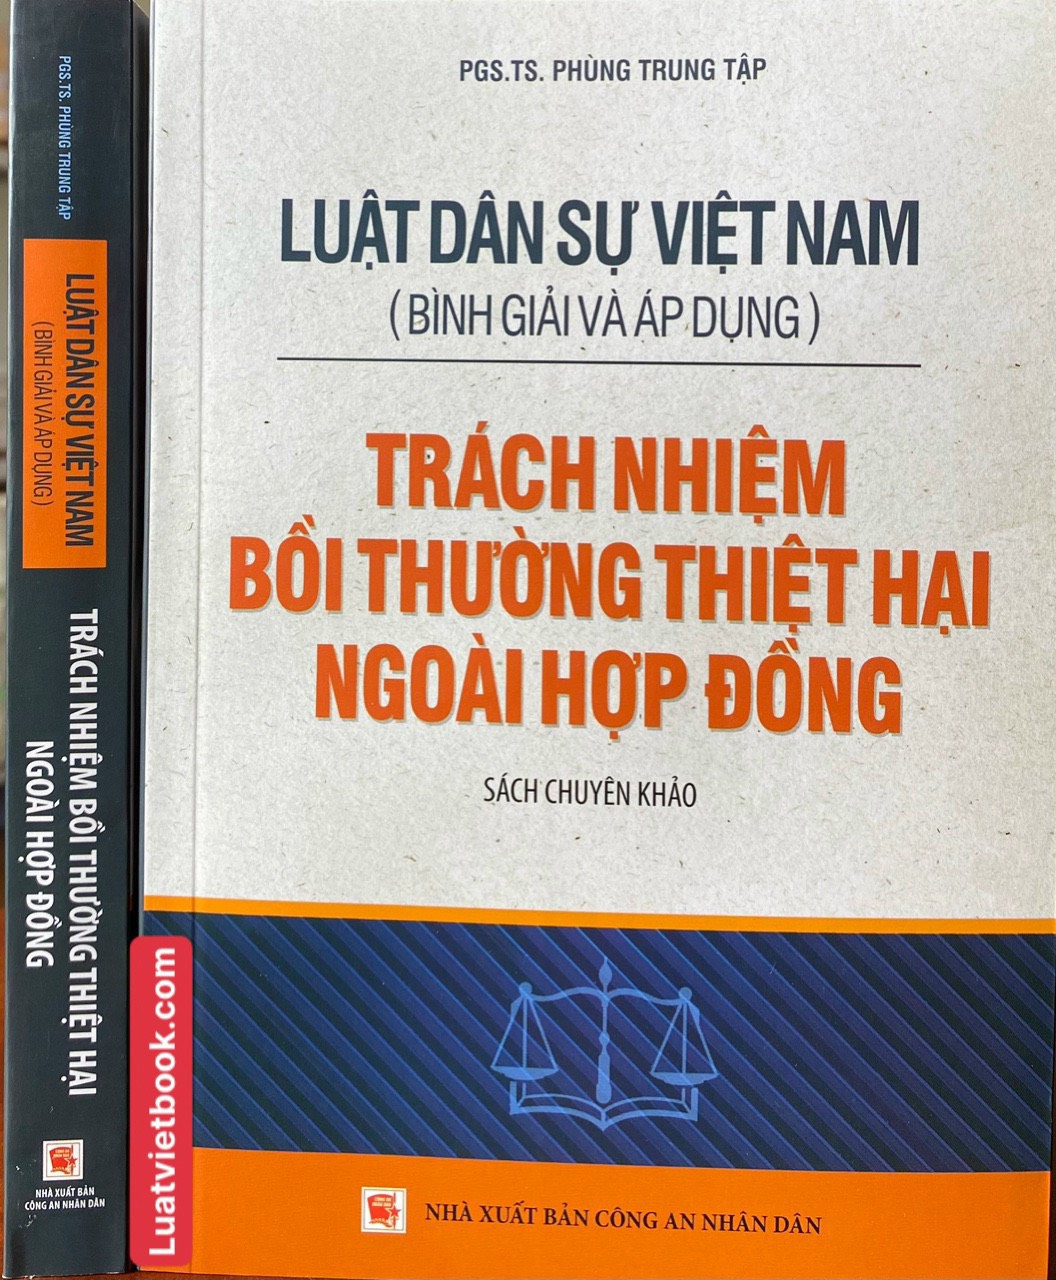 Luật Dân sự Việt Nam (Bình giải và áp dụng) - Trách nhiệm bồi thường thiệt hại ngoài hợp đồng